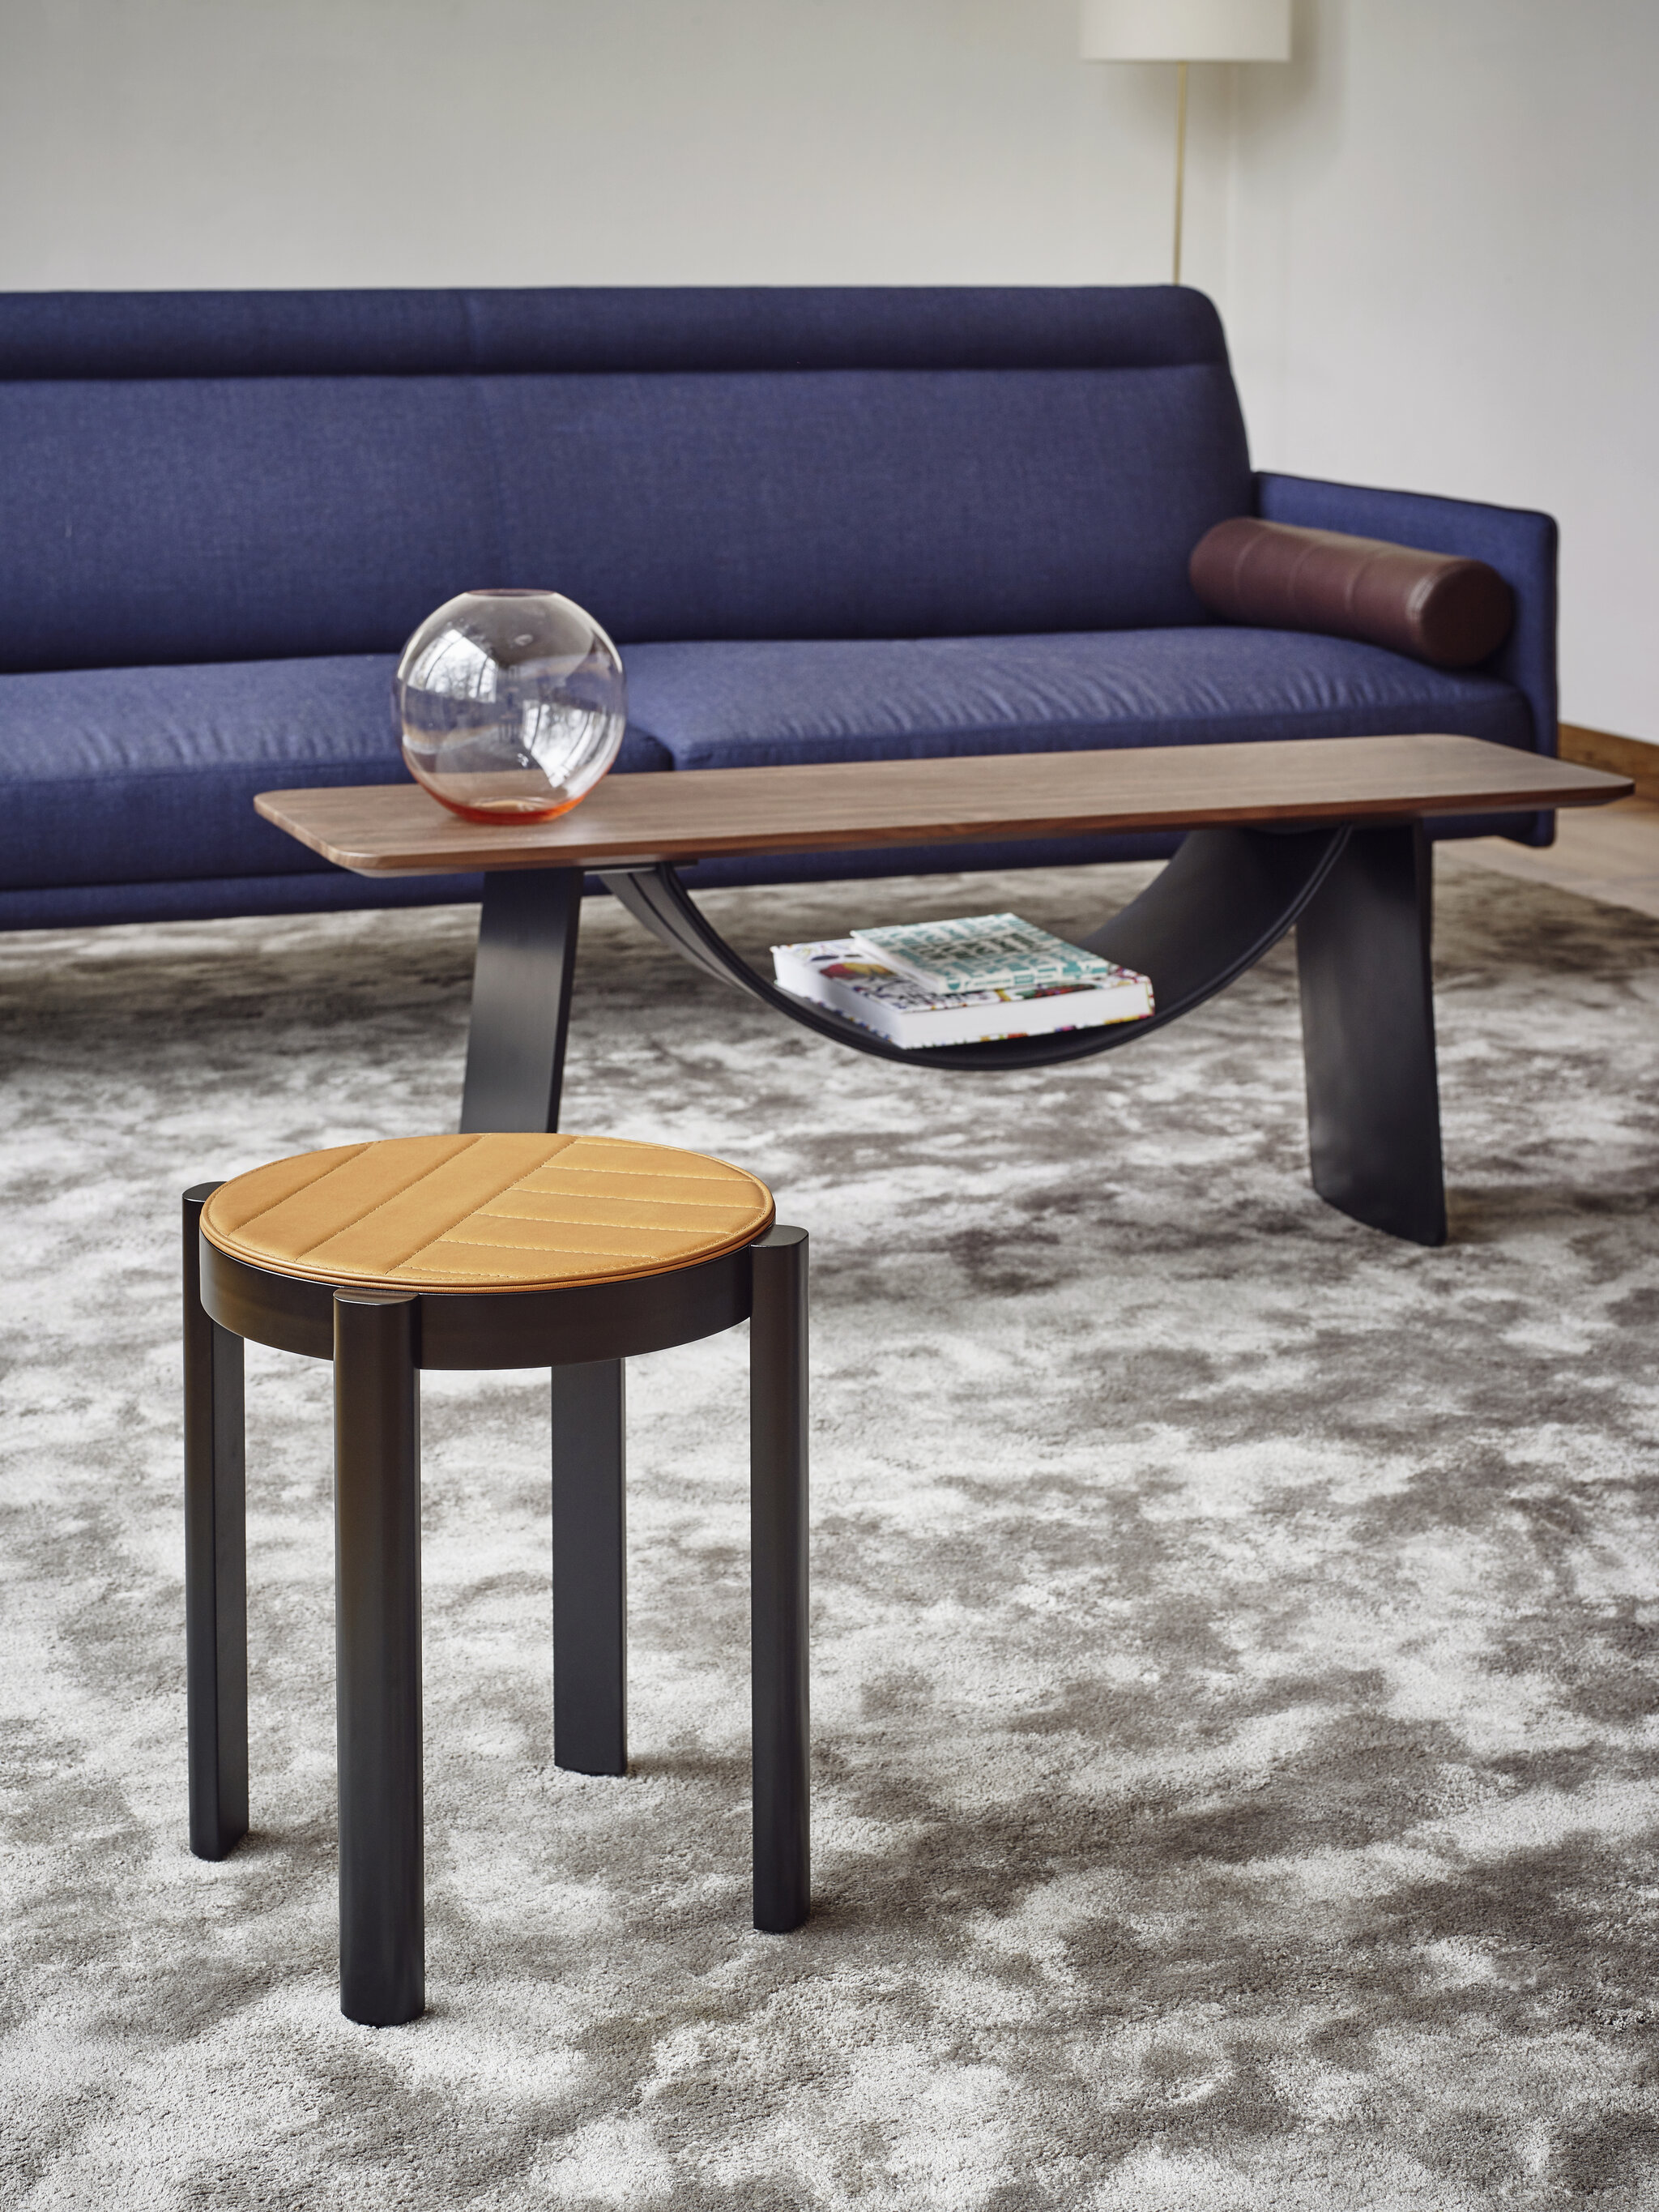 Melange Stool Table mit einer braunen gesteppten Lederplatte und schwarzen Fußgestell, dahinter zusehen ist der Melange Bridge Table und das Melange Sofa 